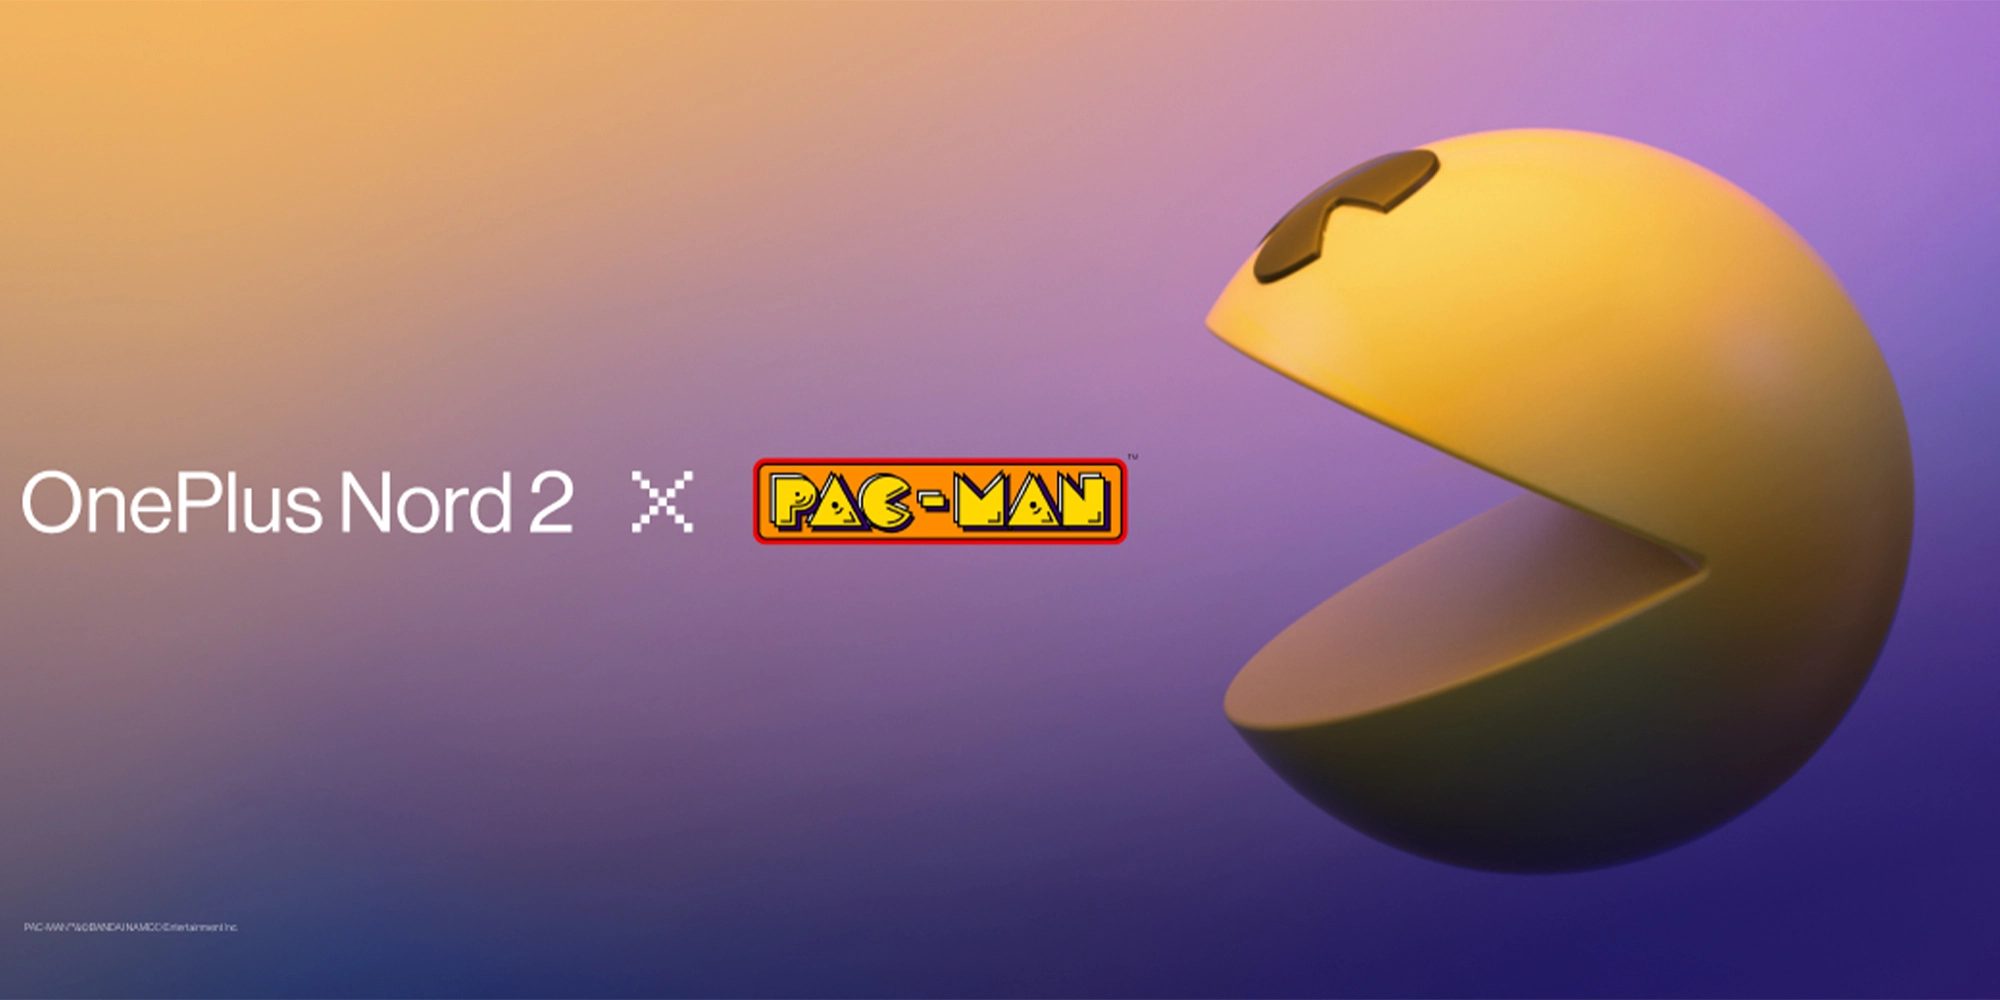 OnePlus svela l’edizione limitata Nord 2 Pac-Man Edition